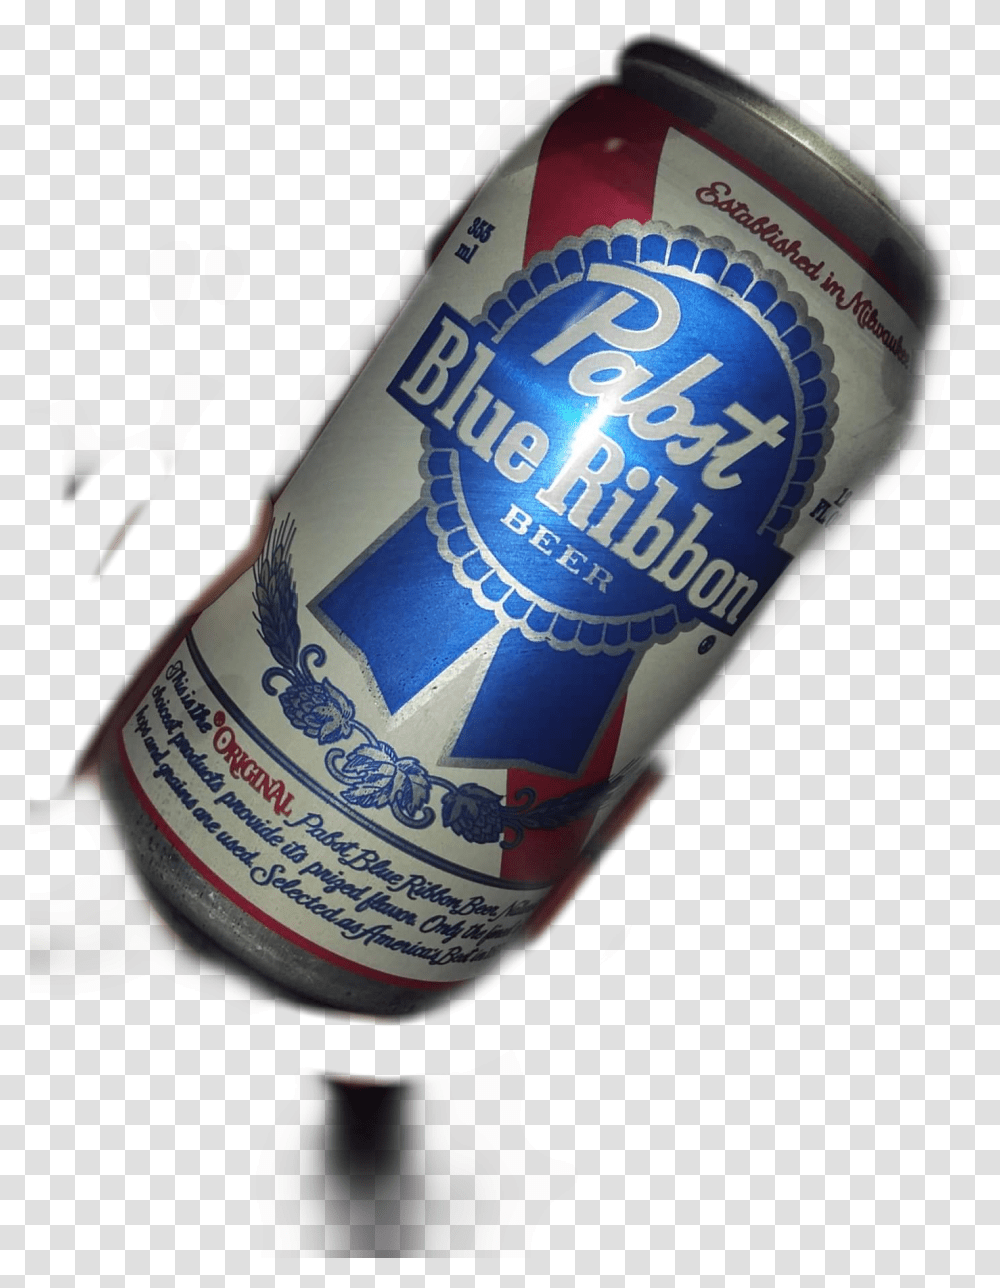 Pabst Blue Ribbon, Beer, Alcohol, Beverage, Drink Transparent Png